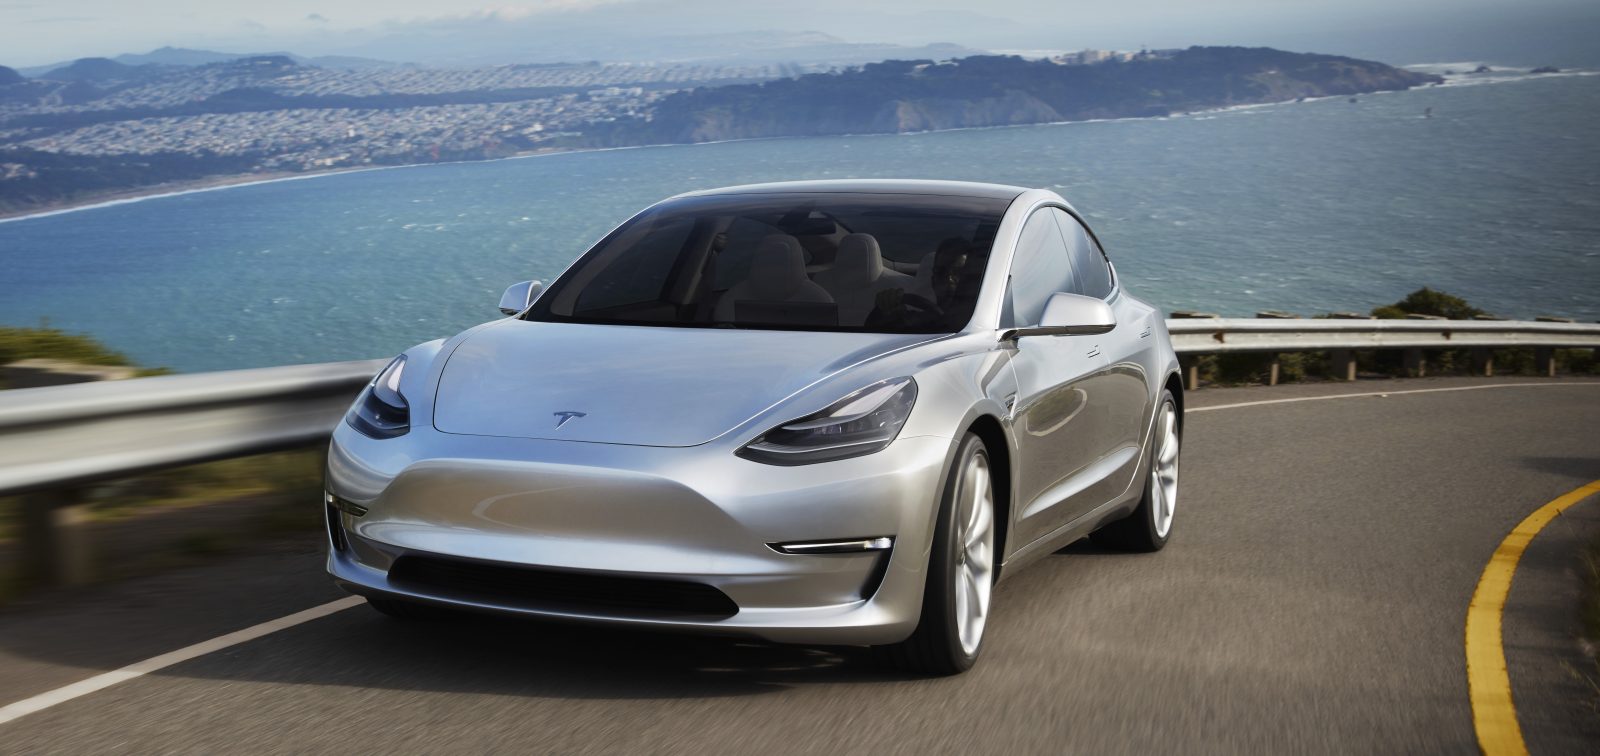 Tesla giấu nhẹm cuộc điều tra về Model 3